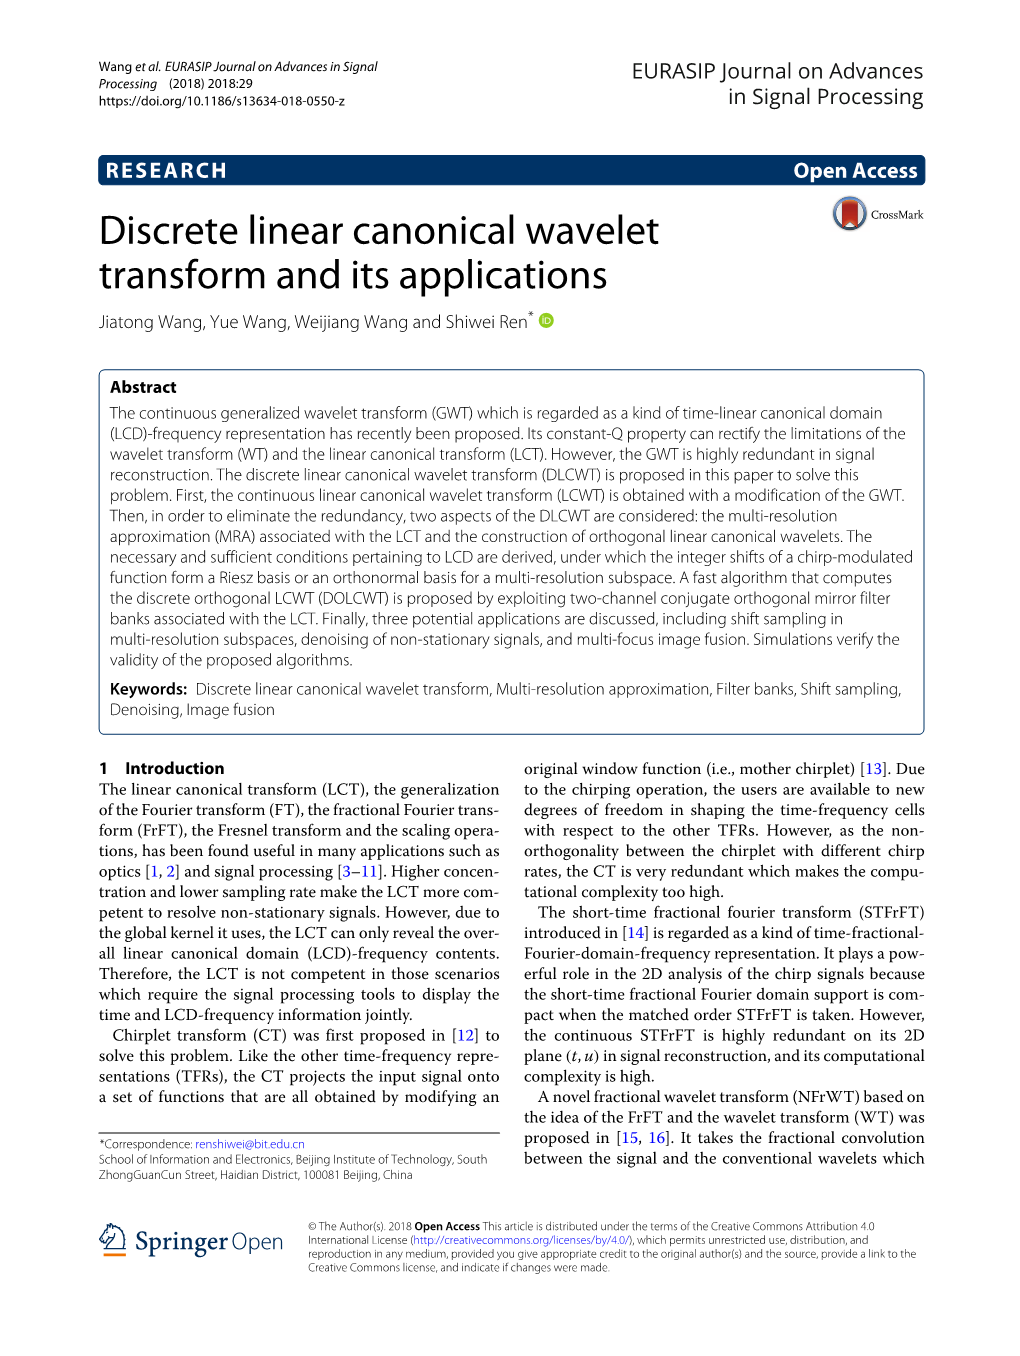 Discrete Linear Canonical Wavelet Transform and Its Applications Jiatong Wang, Yue Wang, Weijiang Wang and Shiwei Ren*